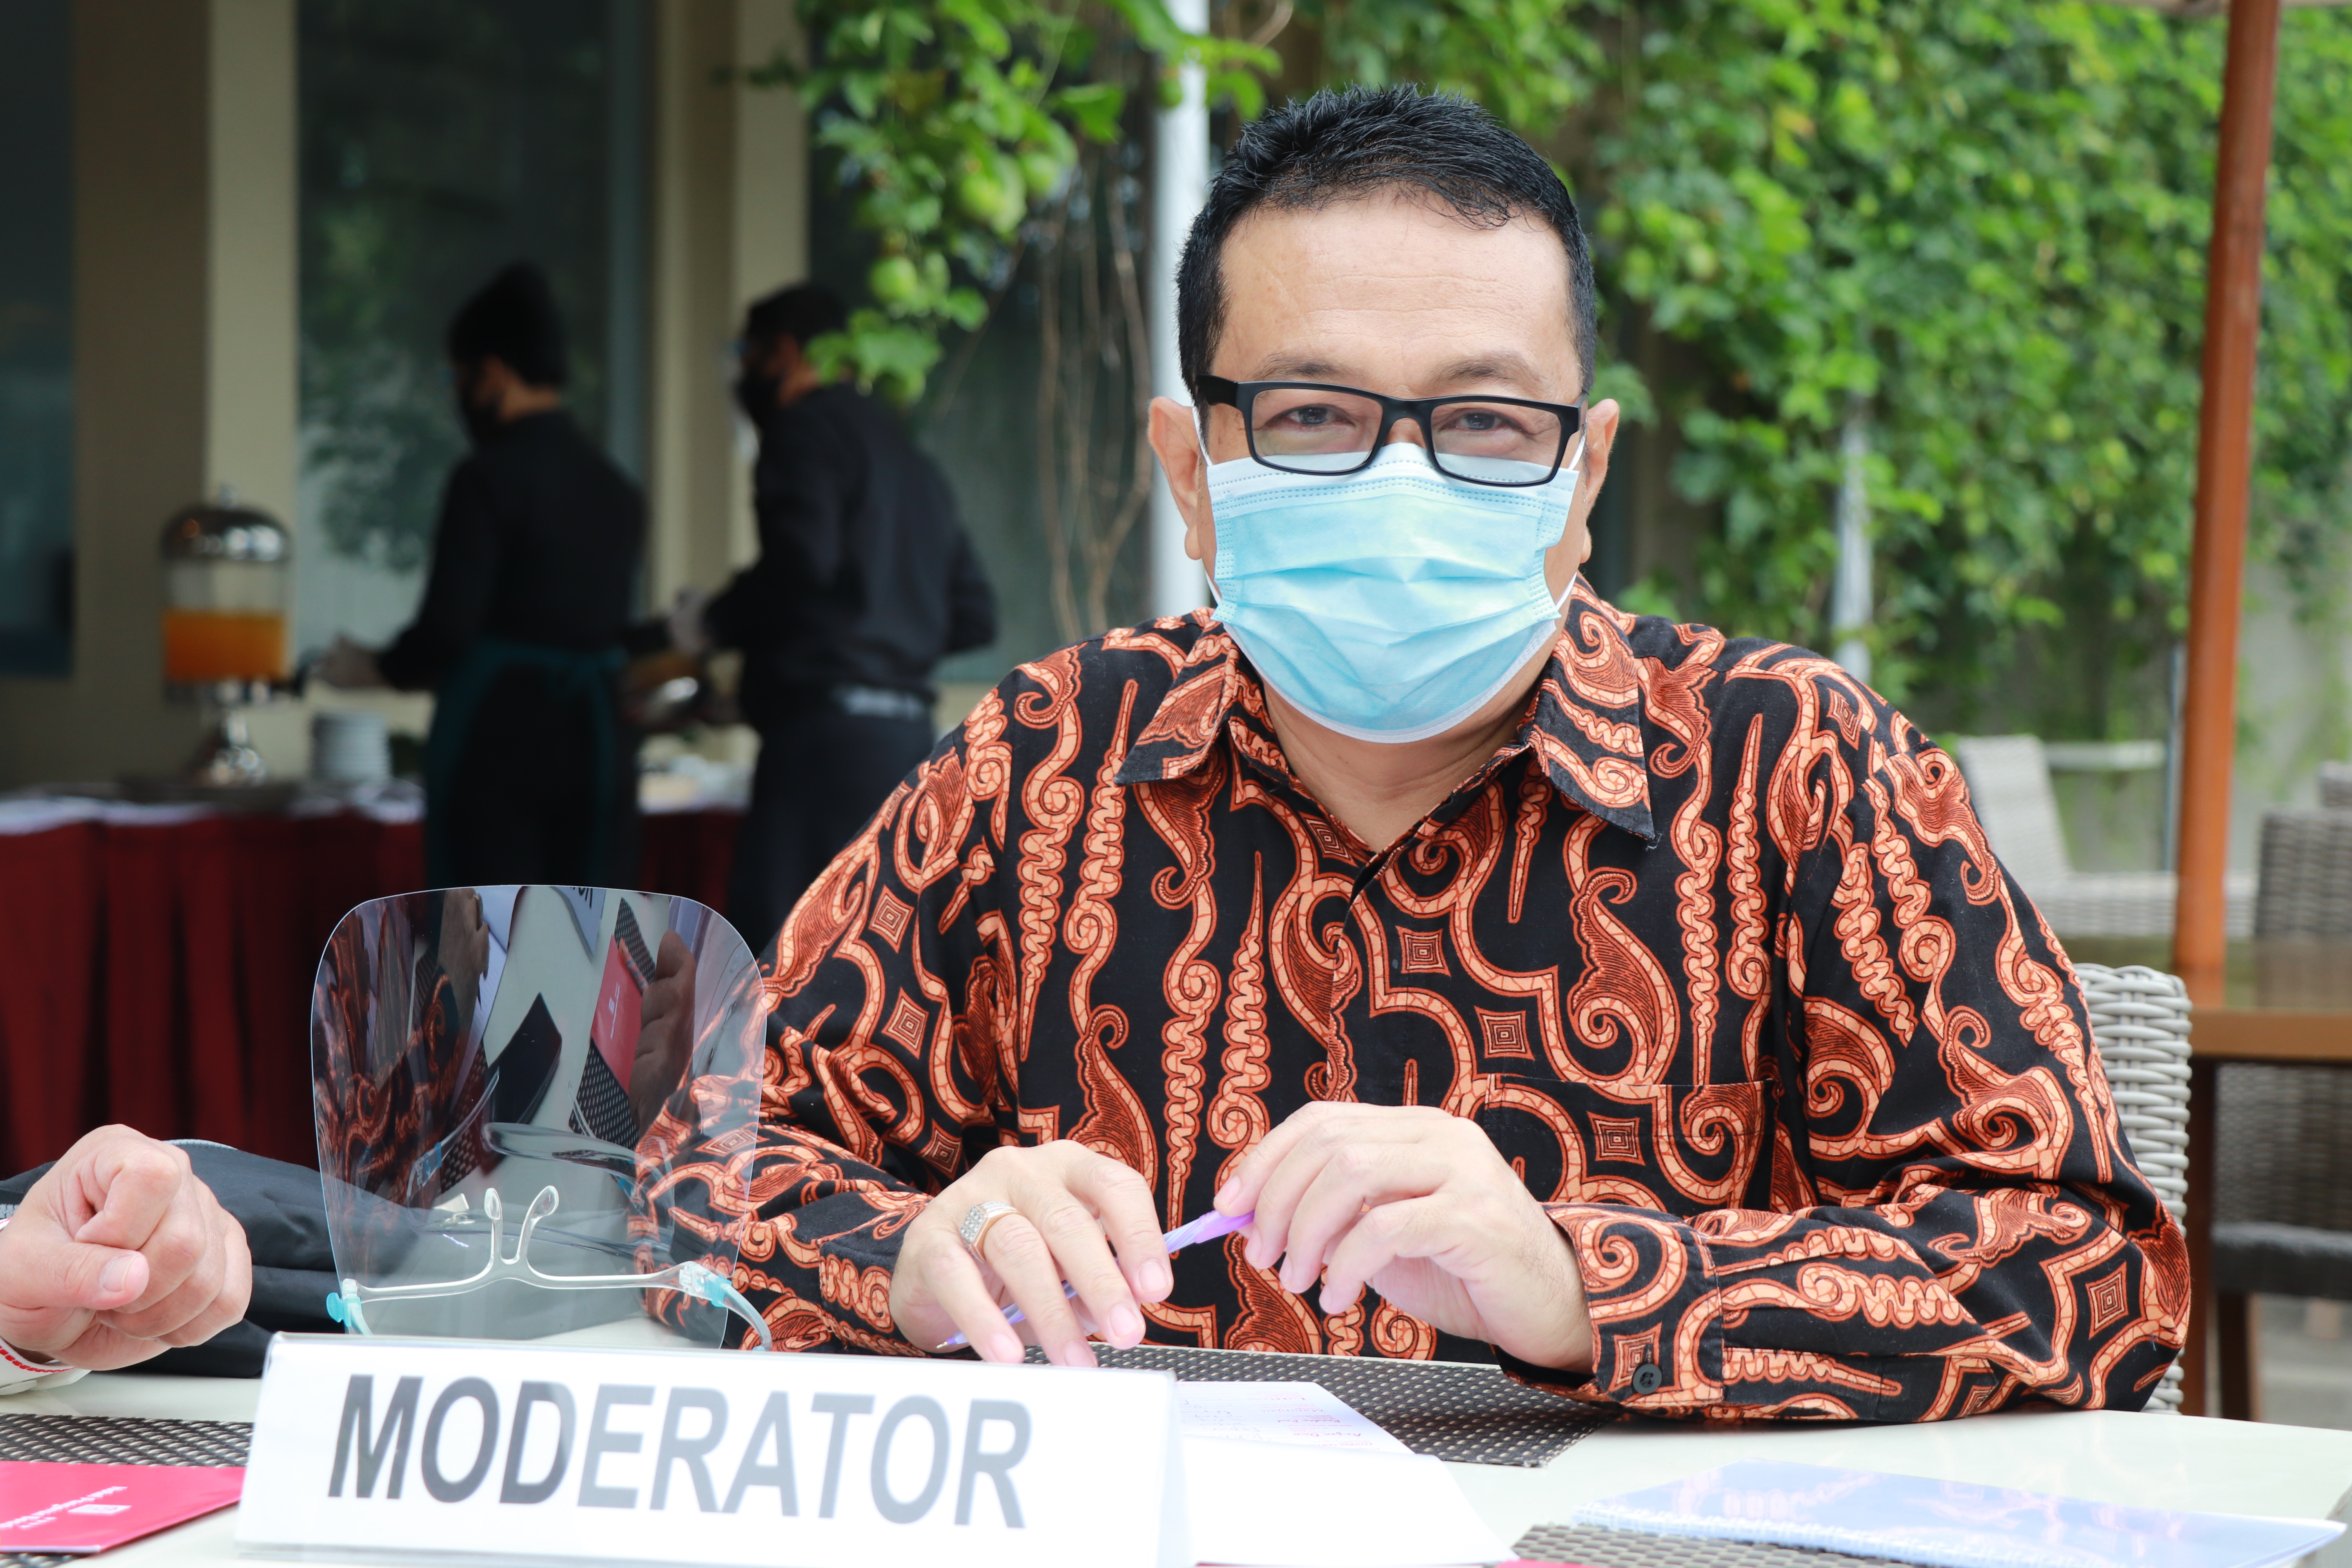 UPDATE ZONASI Kabupaten Kota di Sumatera Barat Minggu ke 48 Pandemi Covid-19 (Periode 7 Februari 2021 - 13 Februari 2021)